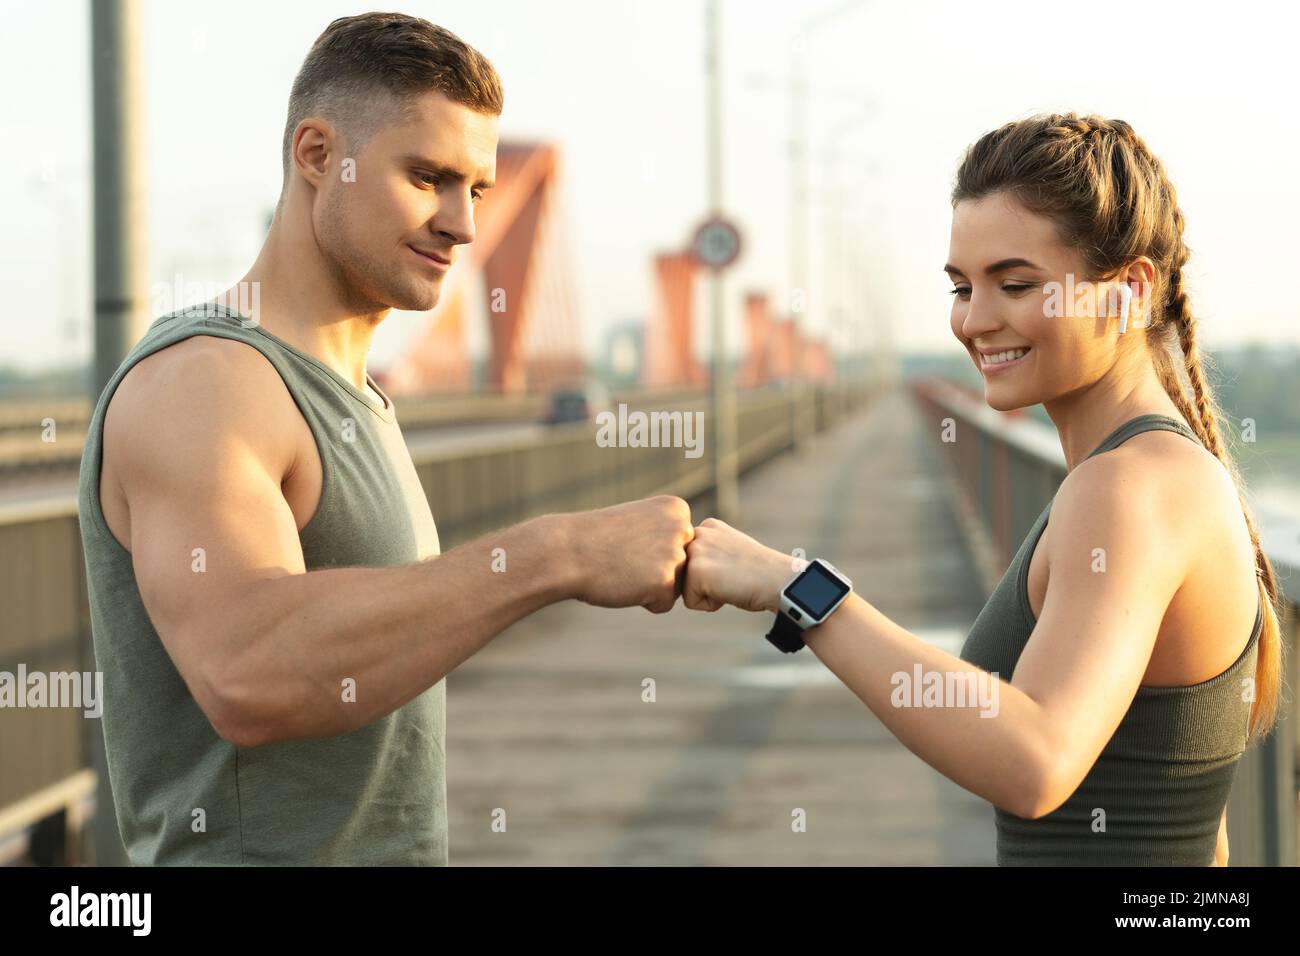 Das athletische Paar macht beim Fitnesstraining auf der Stadtstraße eine Fauststoß-Geste Stockfoto